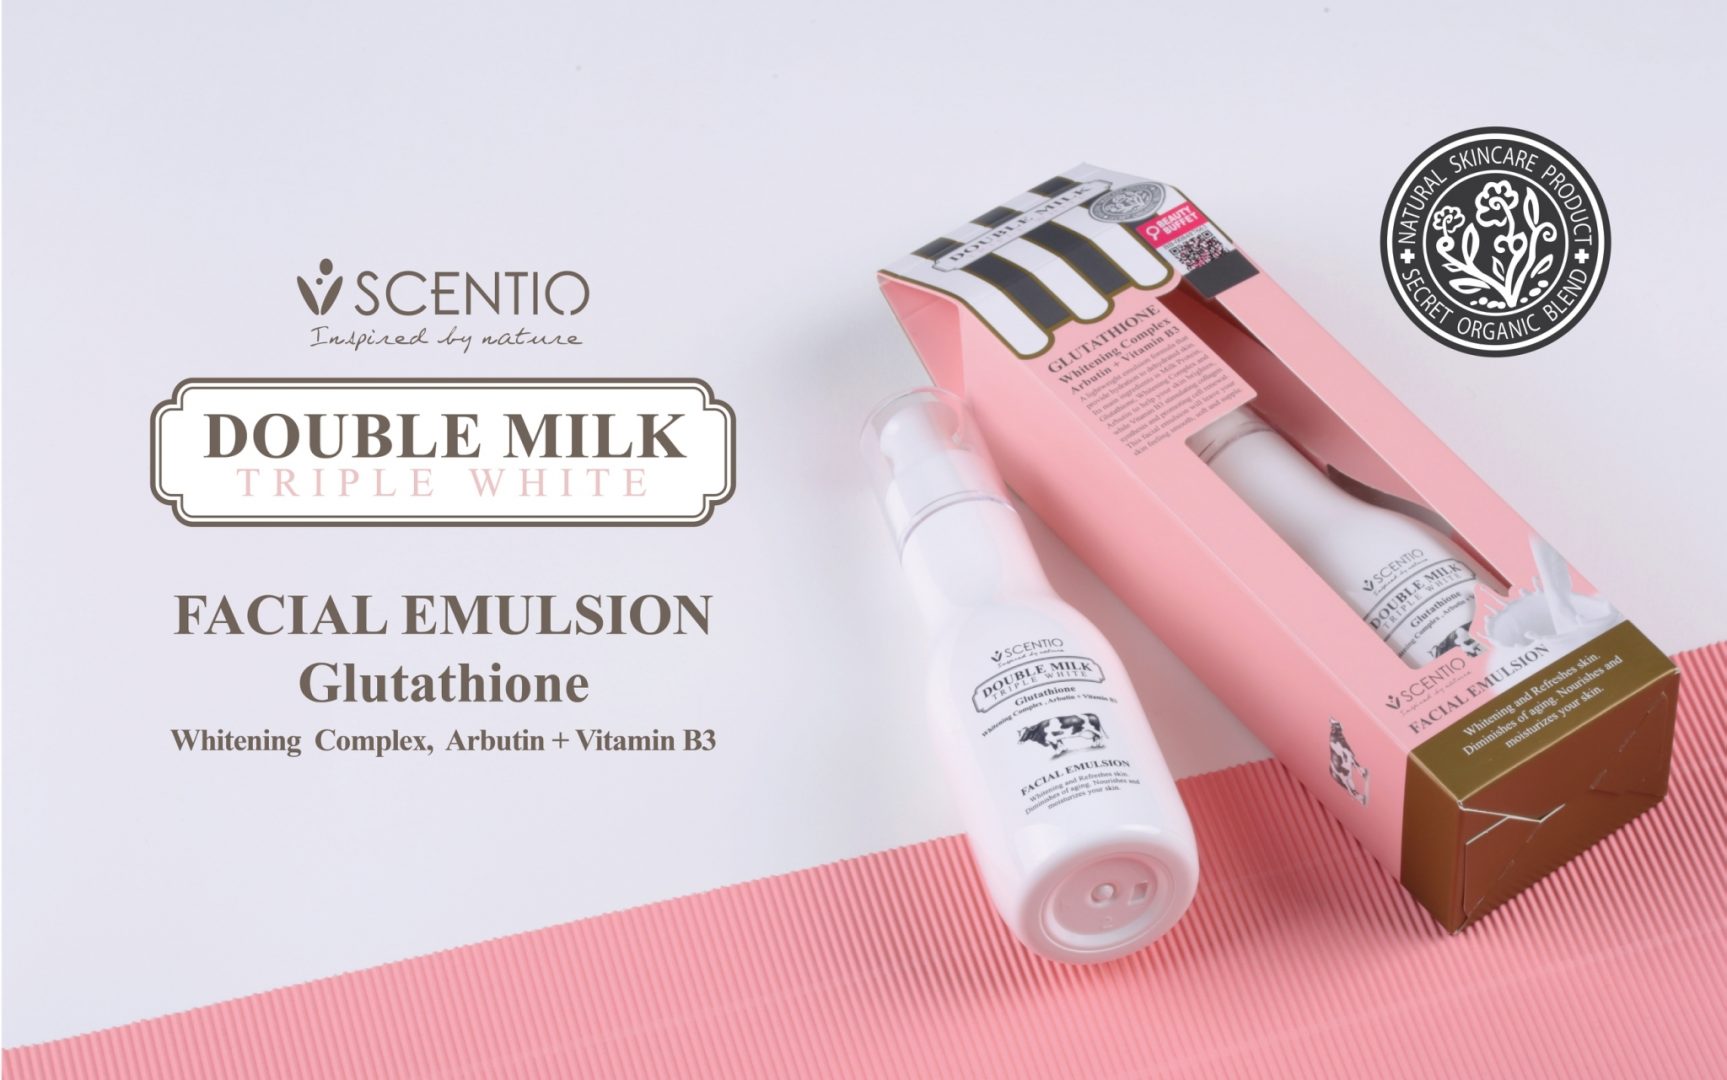 Scentio Double Milk Triple White Facial Emulsion 150ml